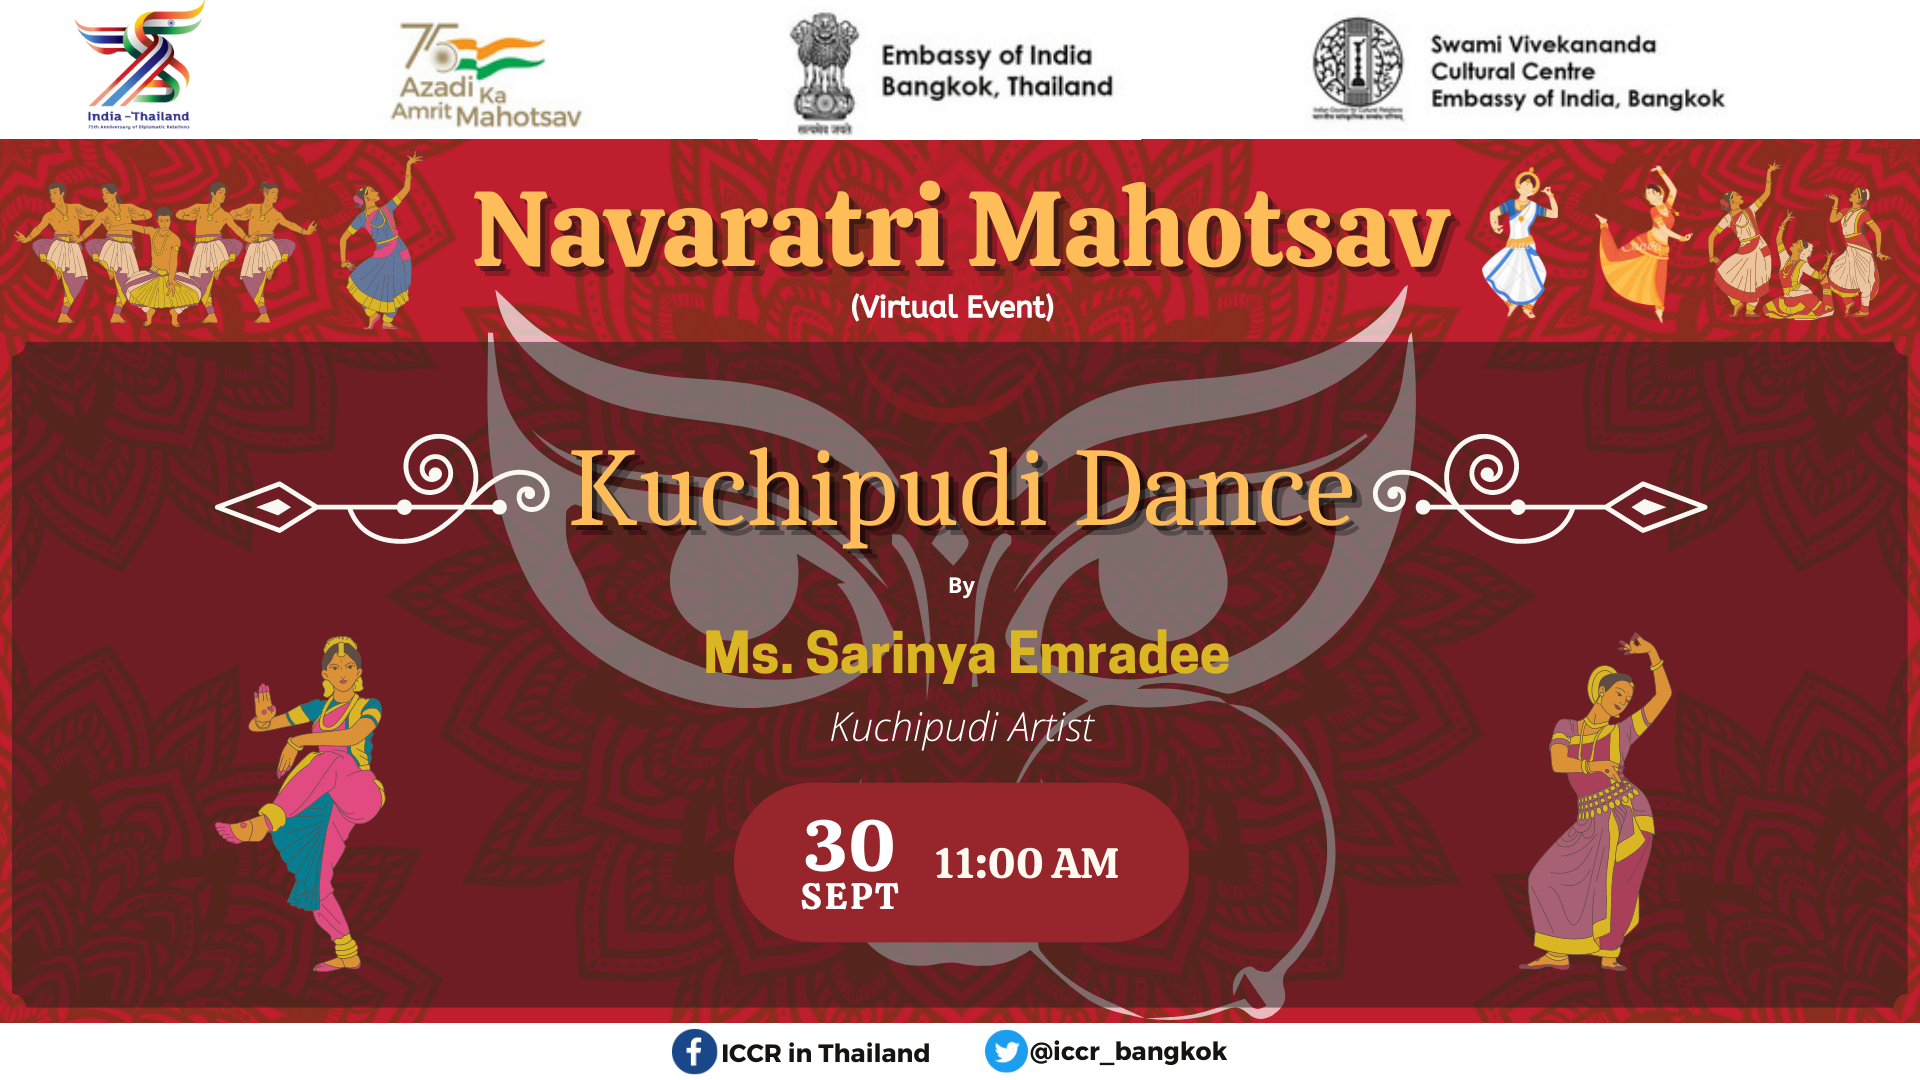 आईसीसीआर वेबसाइट/सोशल मीडिया पर एसवीसीसी का कार्यक्रम नवरात्रि के दिनों-5 को संभालता है: सुश्री सरिन्या इमरादी द्वारा कुचिपुड़ी नृत्य